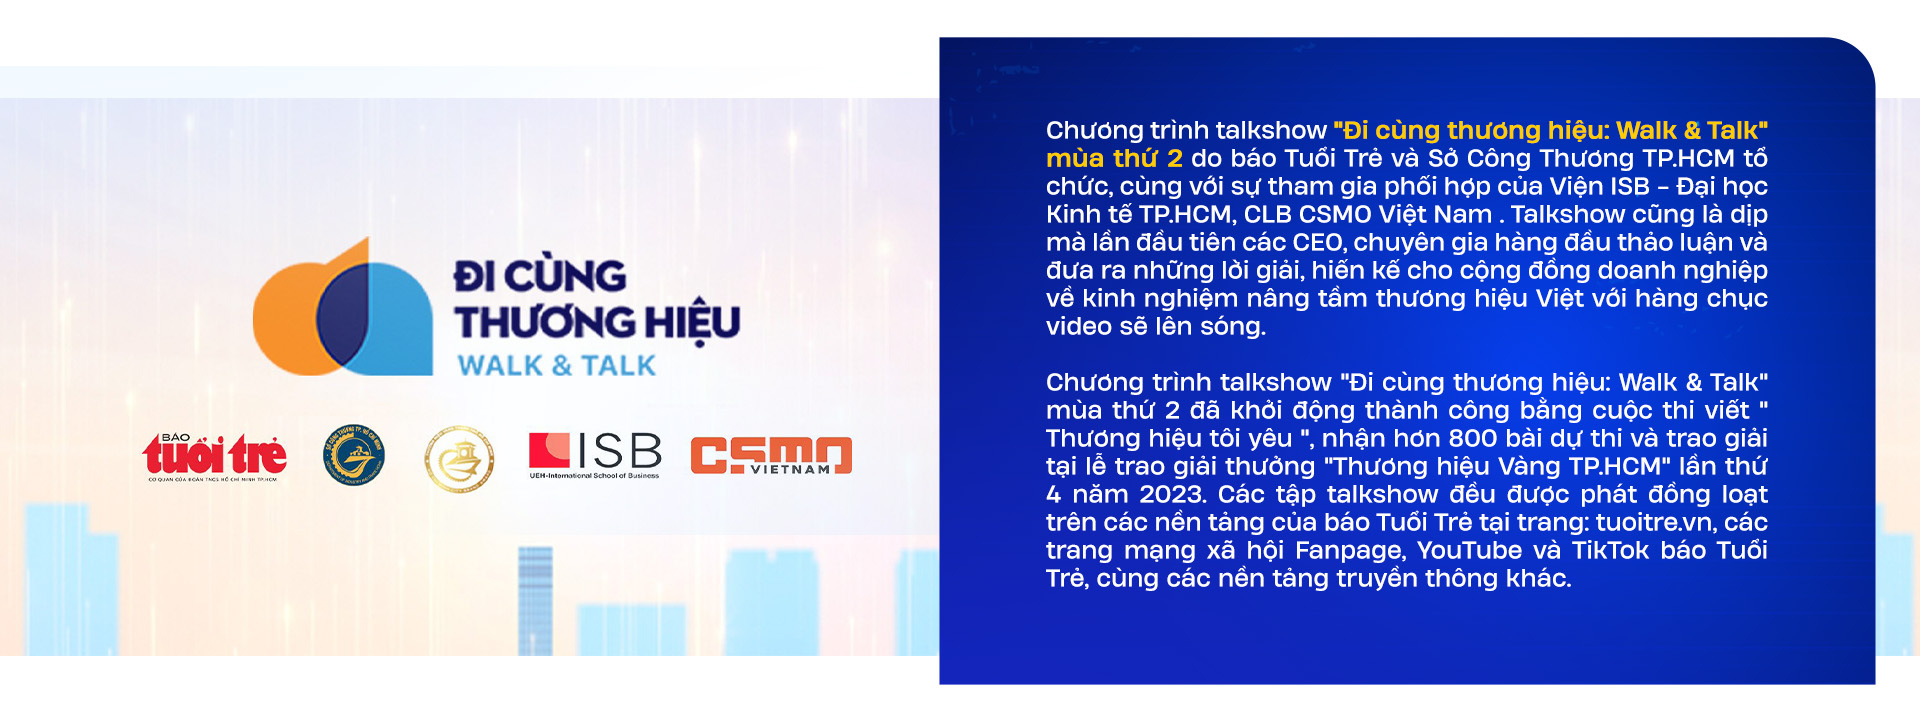 Sếp KIDO Trần Lệ Nguyên: Thời bán hàng livestream đã tới, doanh nghiệp không thay đổi sẽ lạc hậu - Ảnh 15.